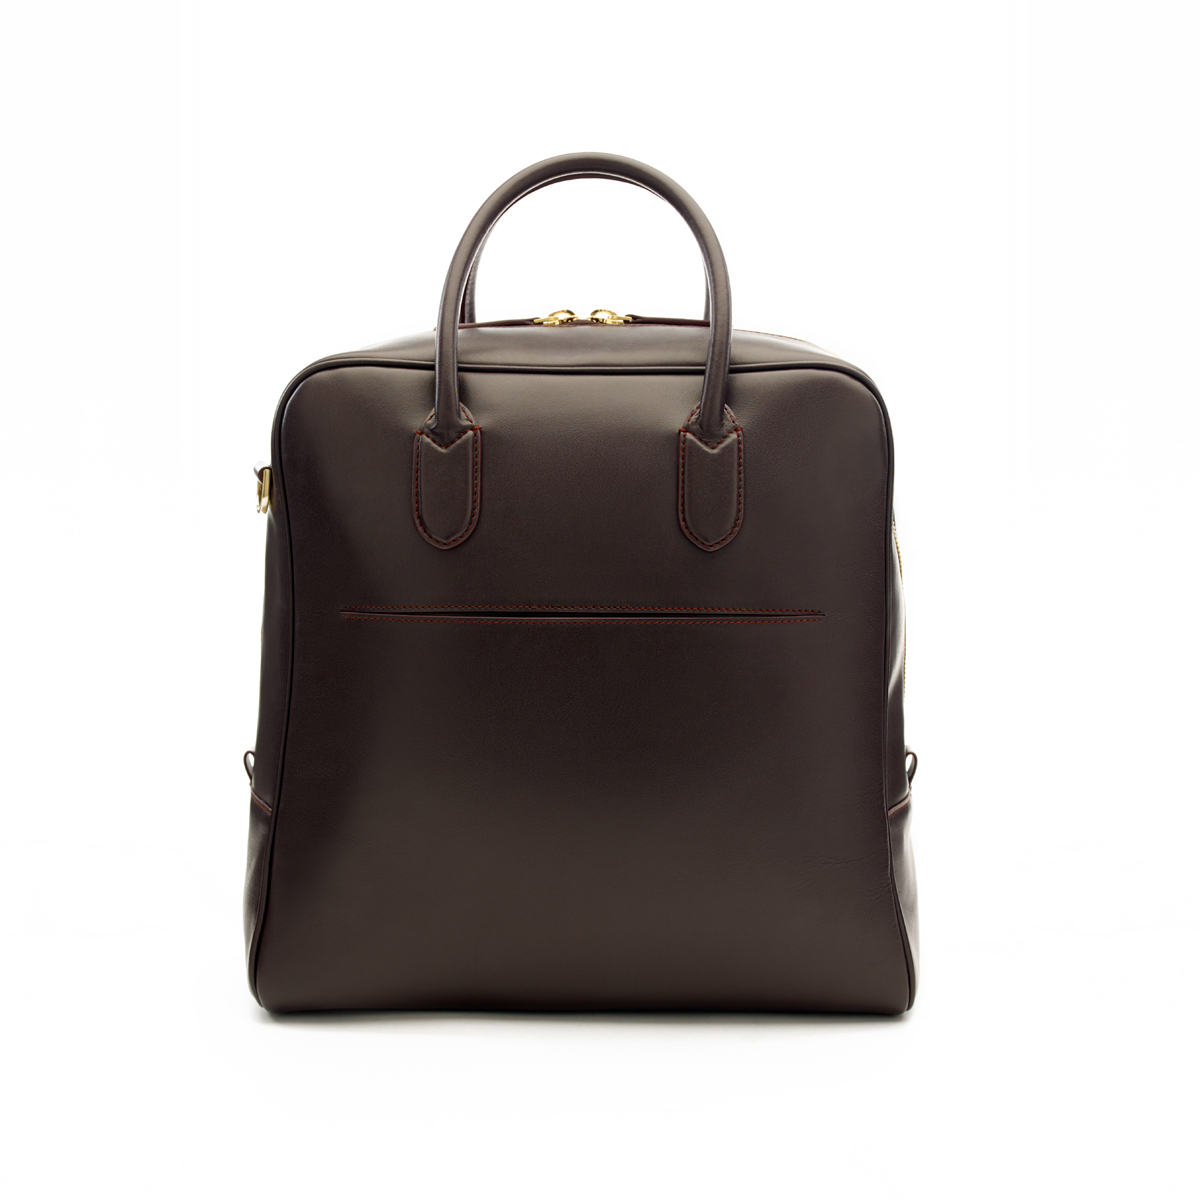 stockton cordovan leather luggage bag